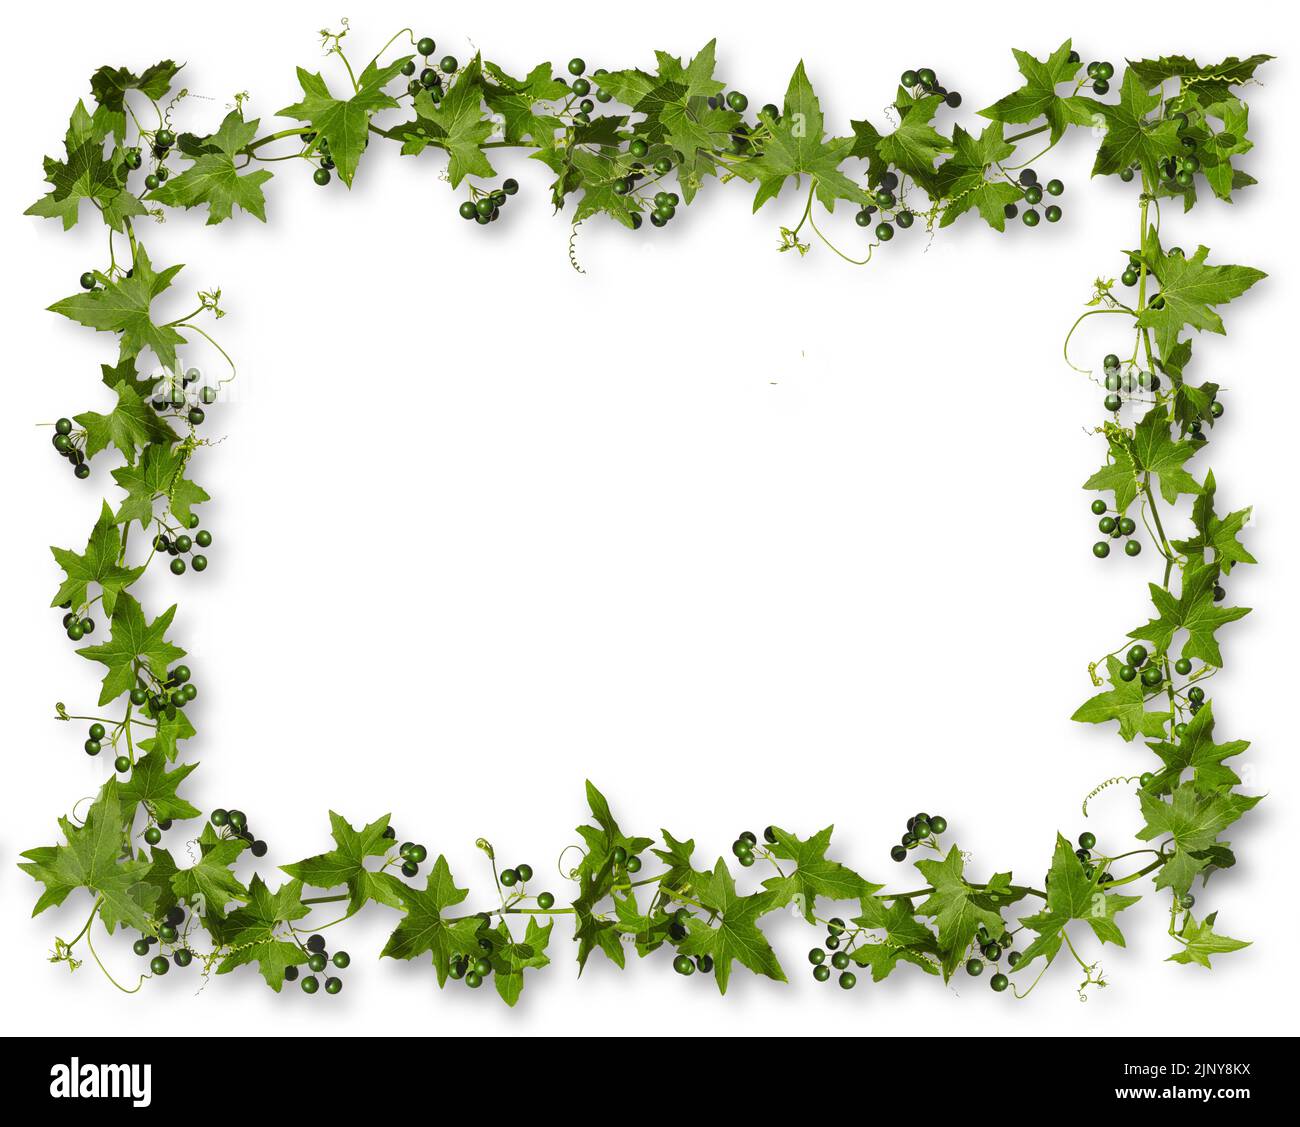 Hiedra con bayas verdes aisladas sobre fondo blanco con sombras, marco rectangular. Foto de stock